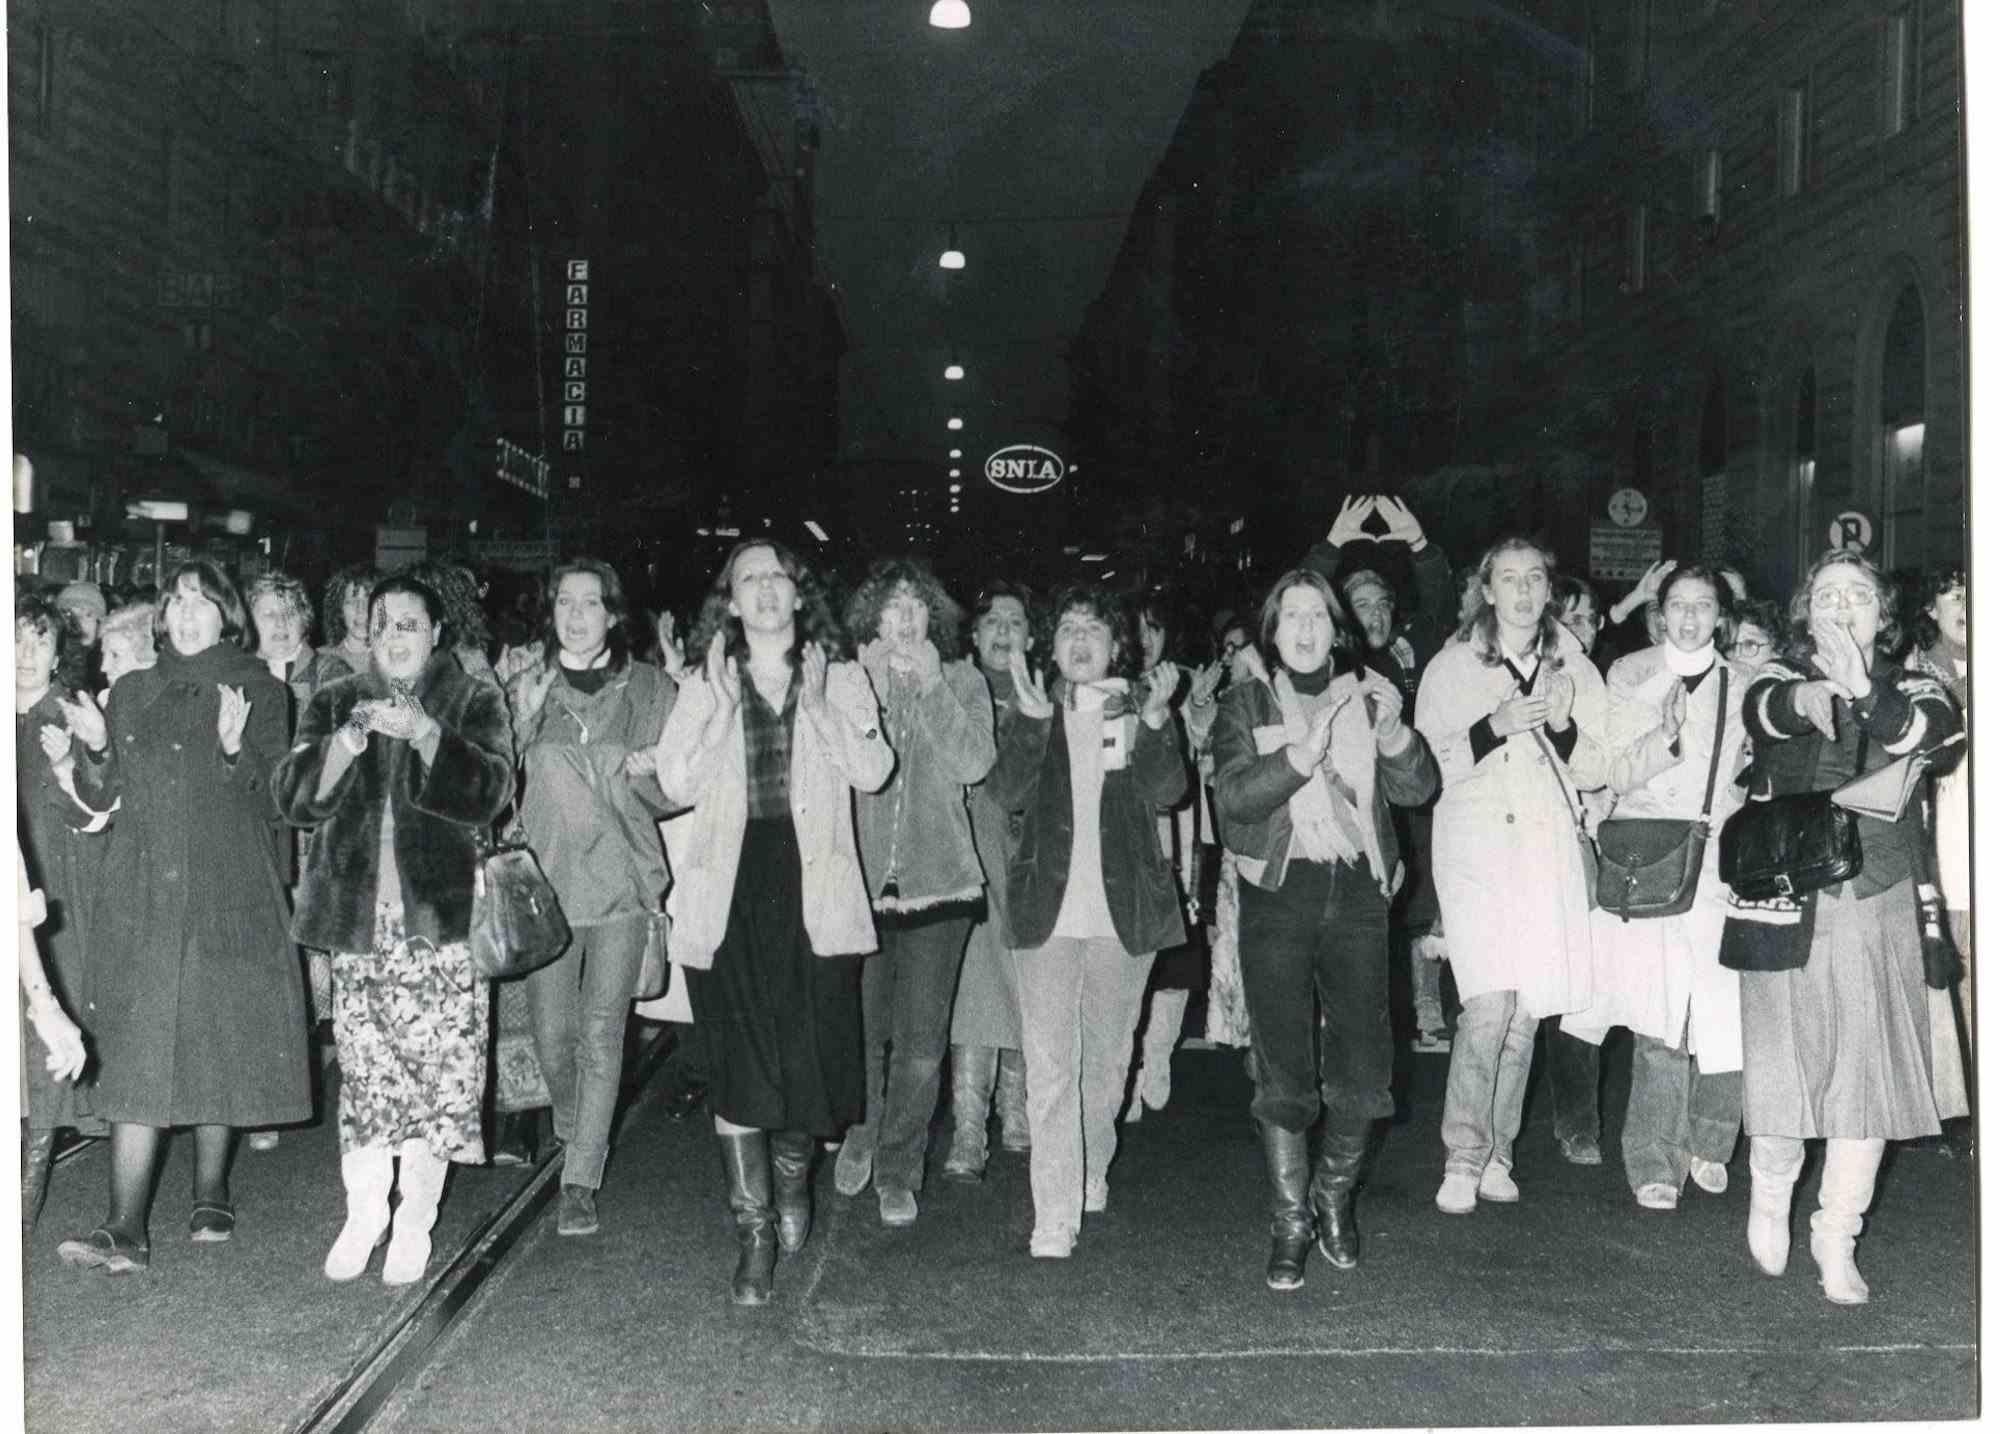 Unknown Black and White Photograph – The Protest - Historische Fotografie über die feministische Bewegung - 1978